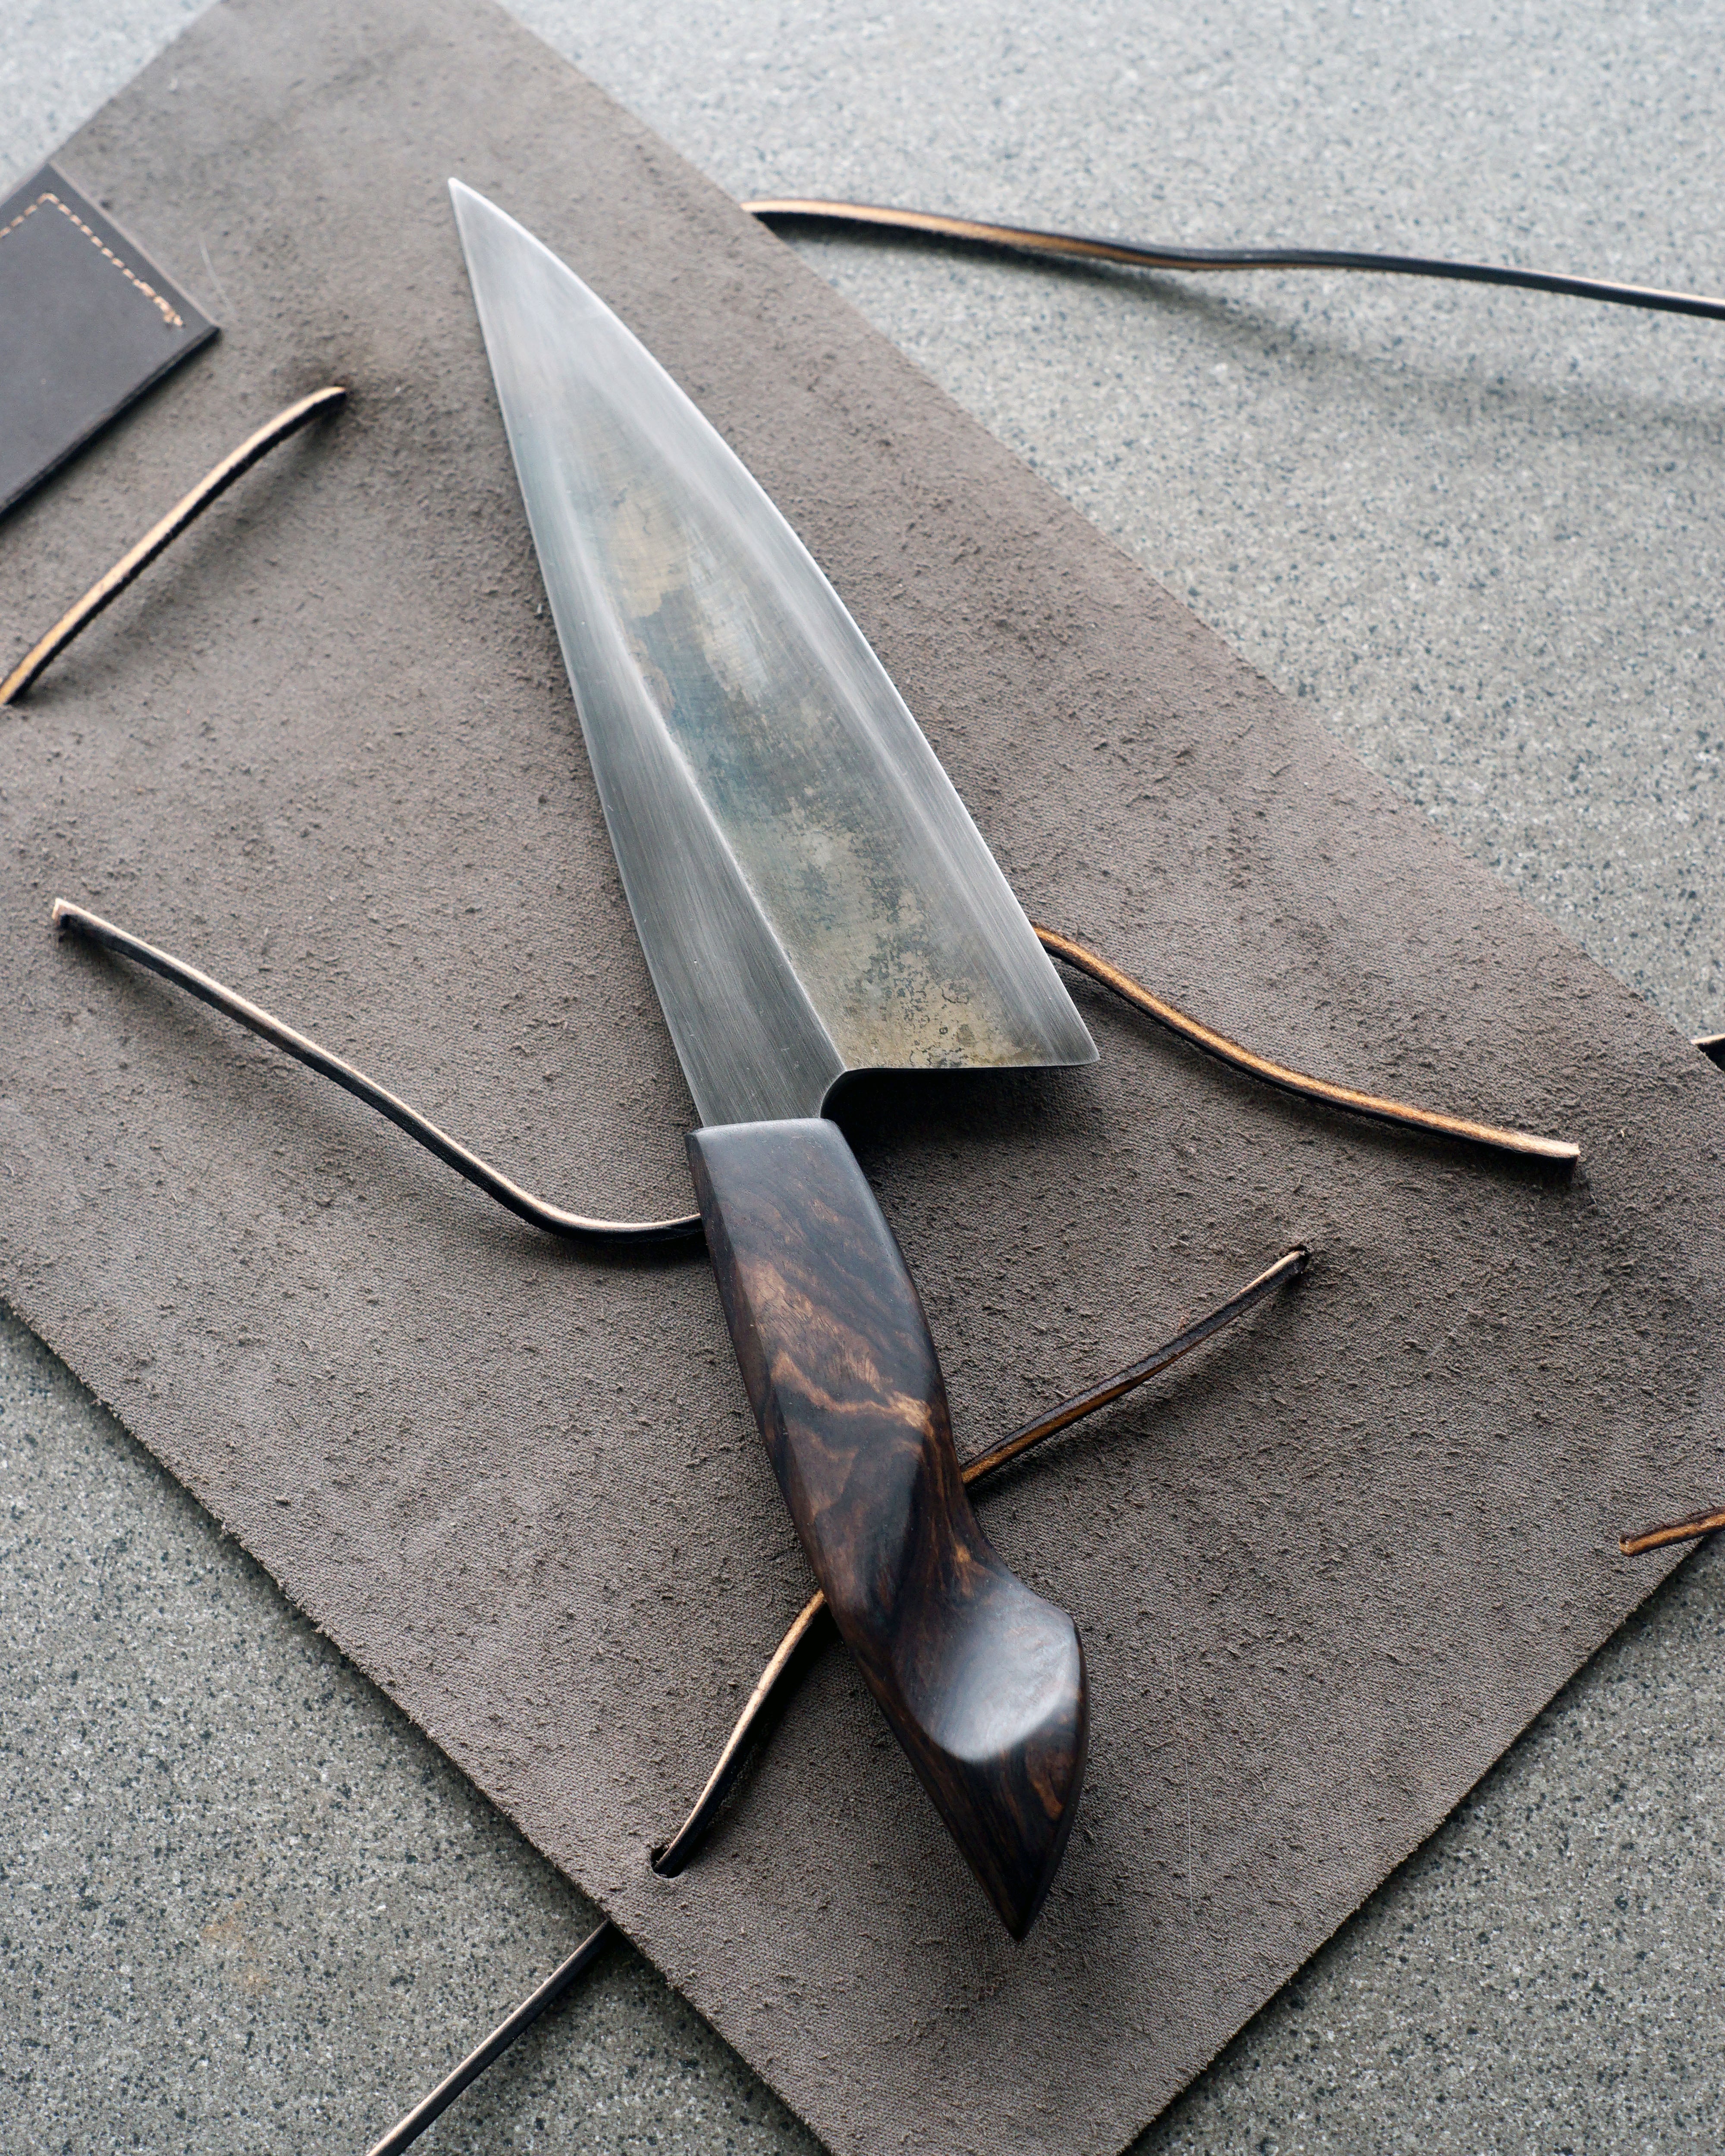 Blackwood & Brass S-Grind Chef's Knife